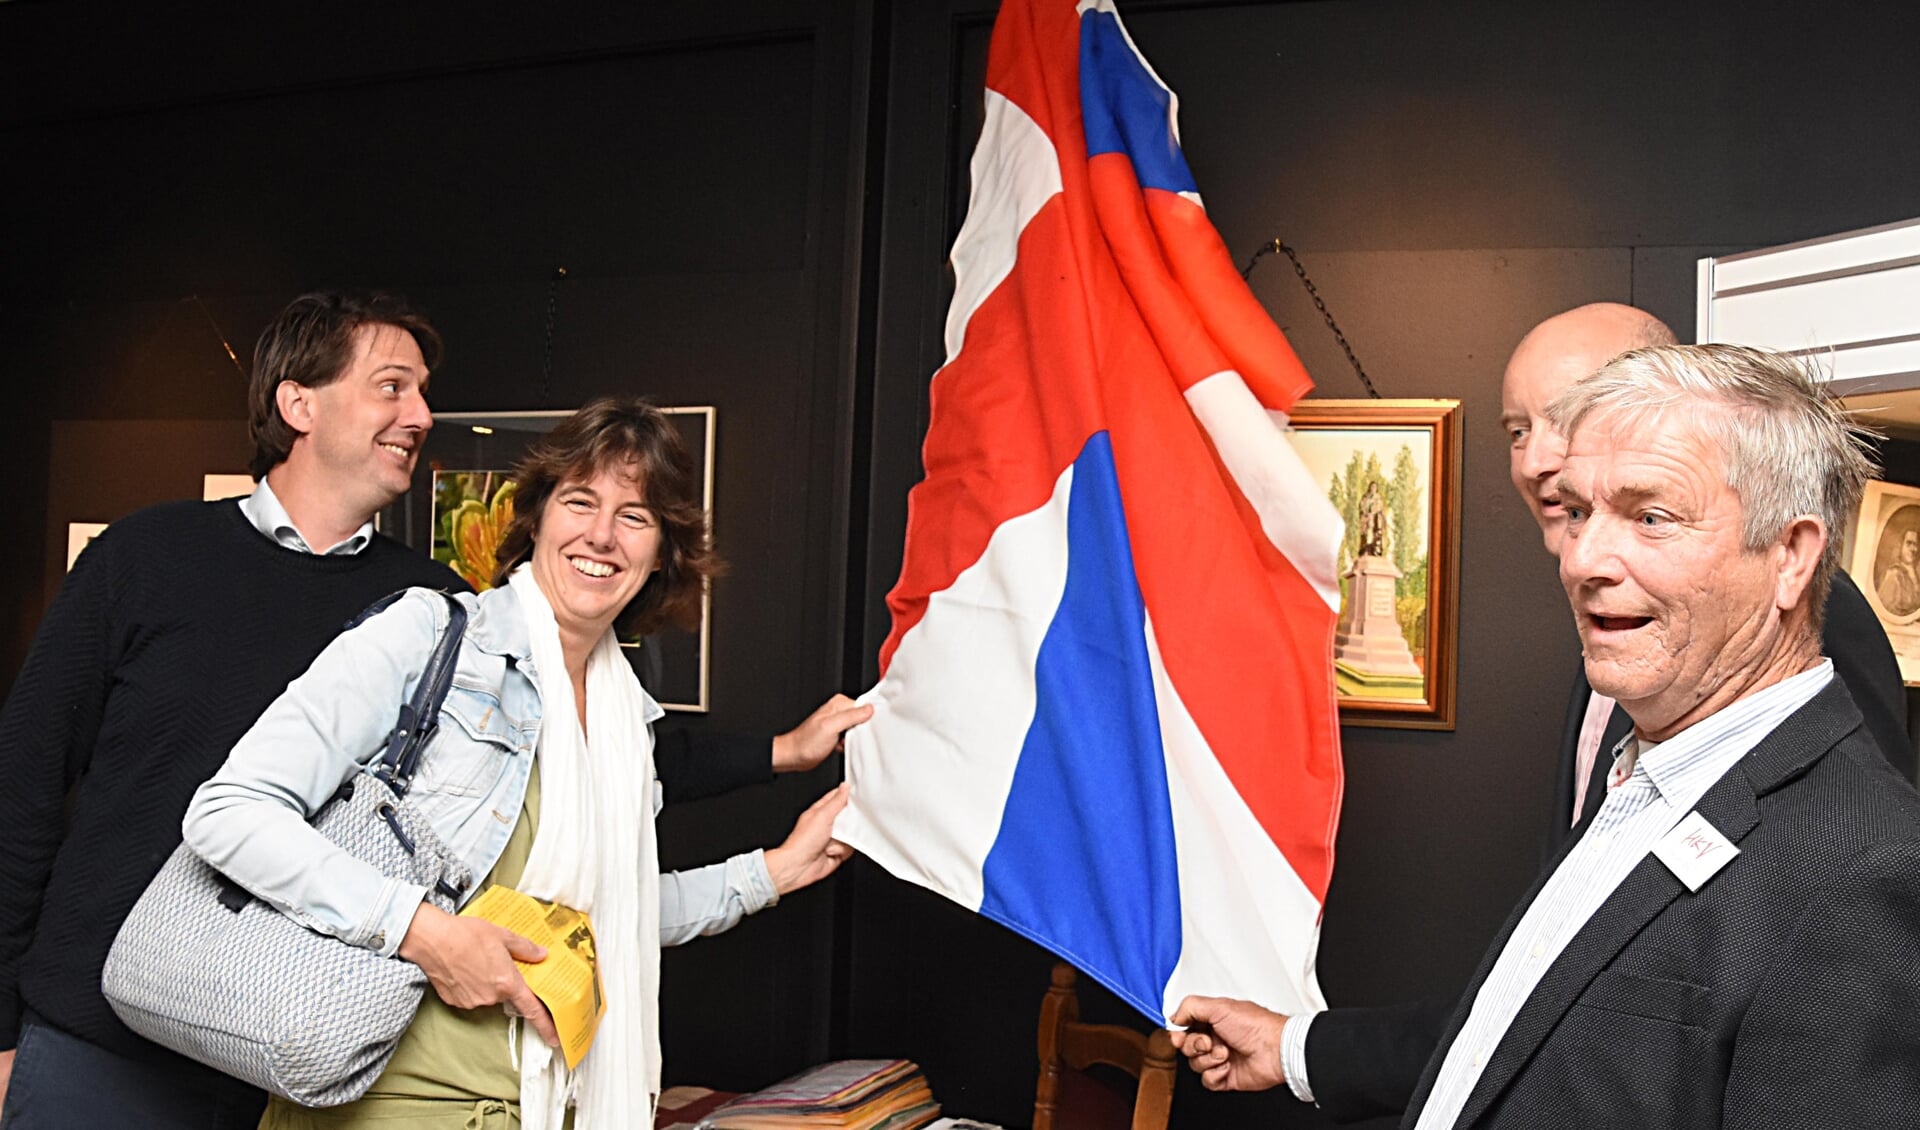 De HKV vereniging wist twee nazaten van Herman Boerhaave te traceren om een schilderij van de Voorhoutse kunstenaar Jan Floor te onthullen. | Foto: PvK